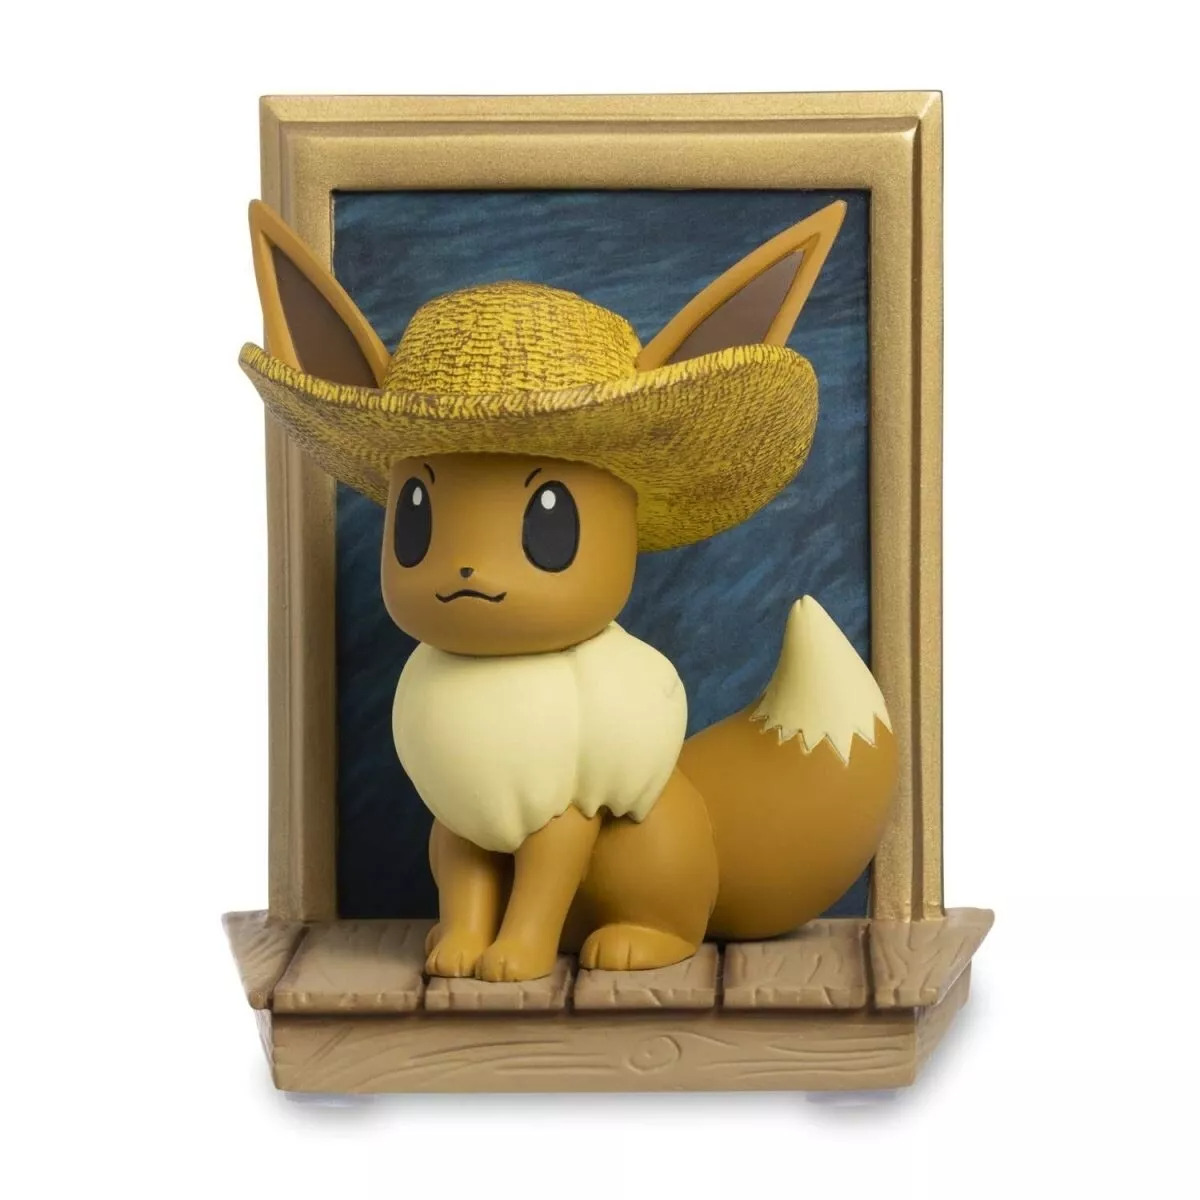 Eevee Van Gogh Museum & Pokemon Center Figure With Self-Portrait